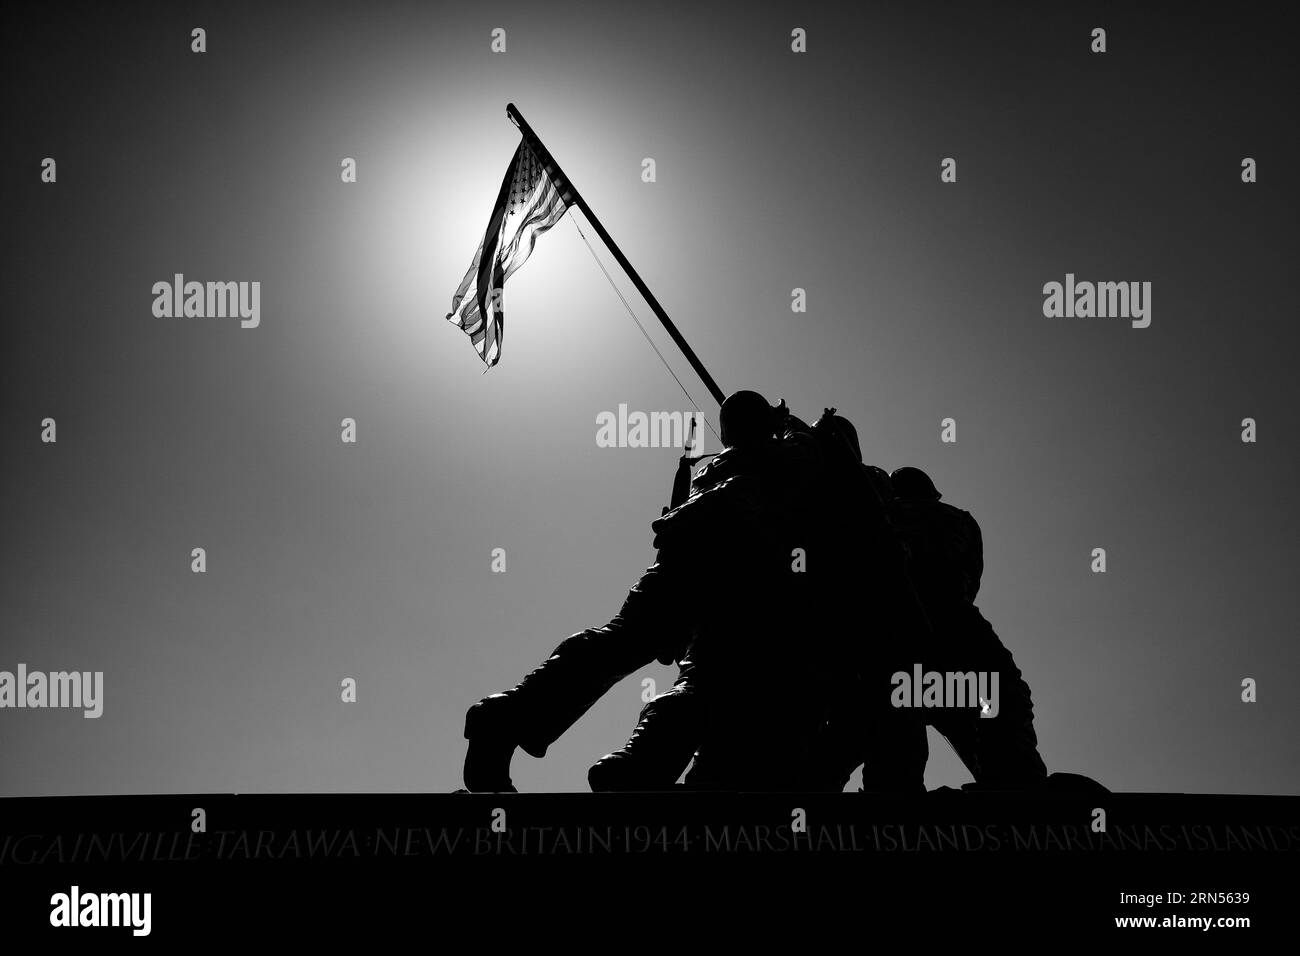 ARLINGTON, VA, Vereinigte Staaten – das Iwo Jima Memorial, auch bekannt als Marine Corps war Memorial, ist eine machtvolle Hommage an die Tapferkeit der US Marines während des Zweiten Weltkriegs Stockfoto